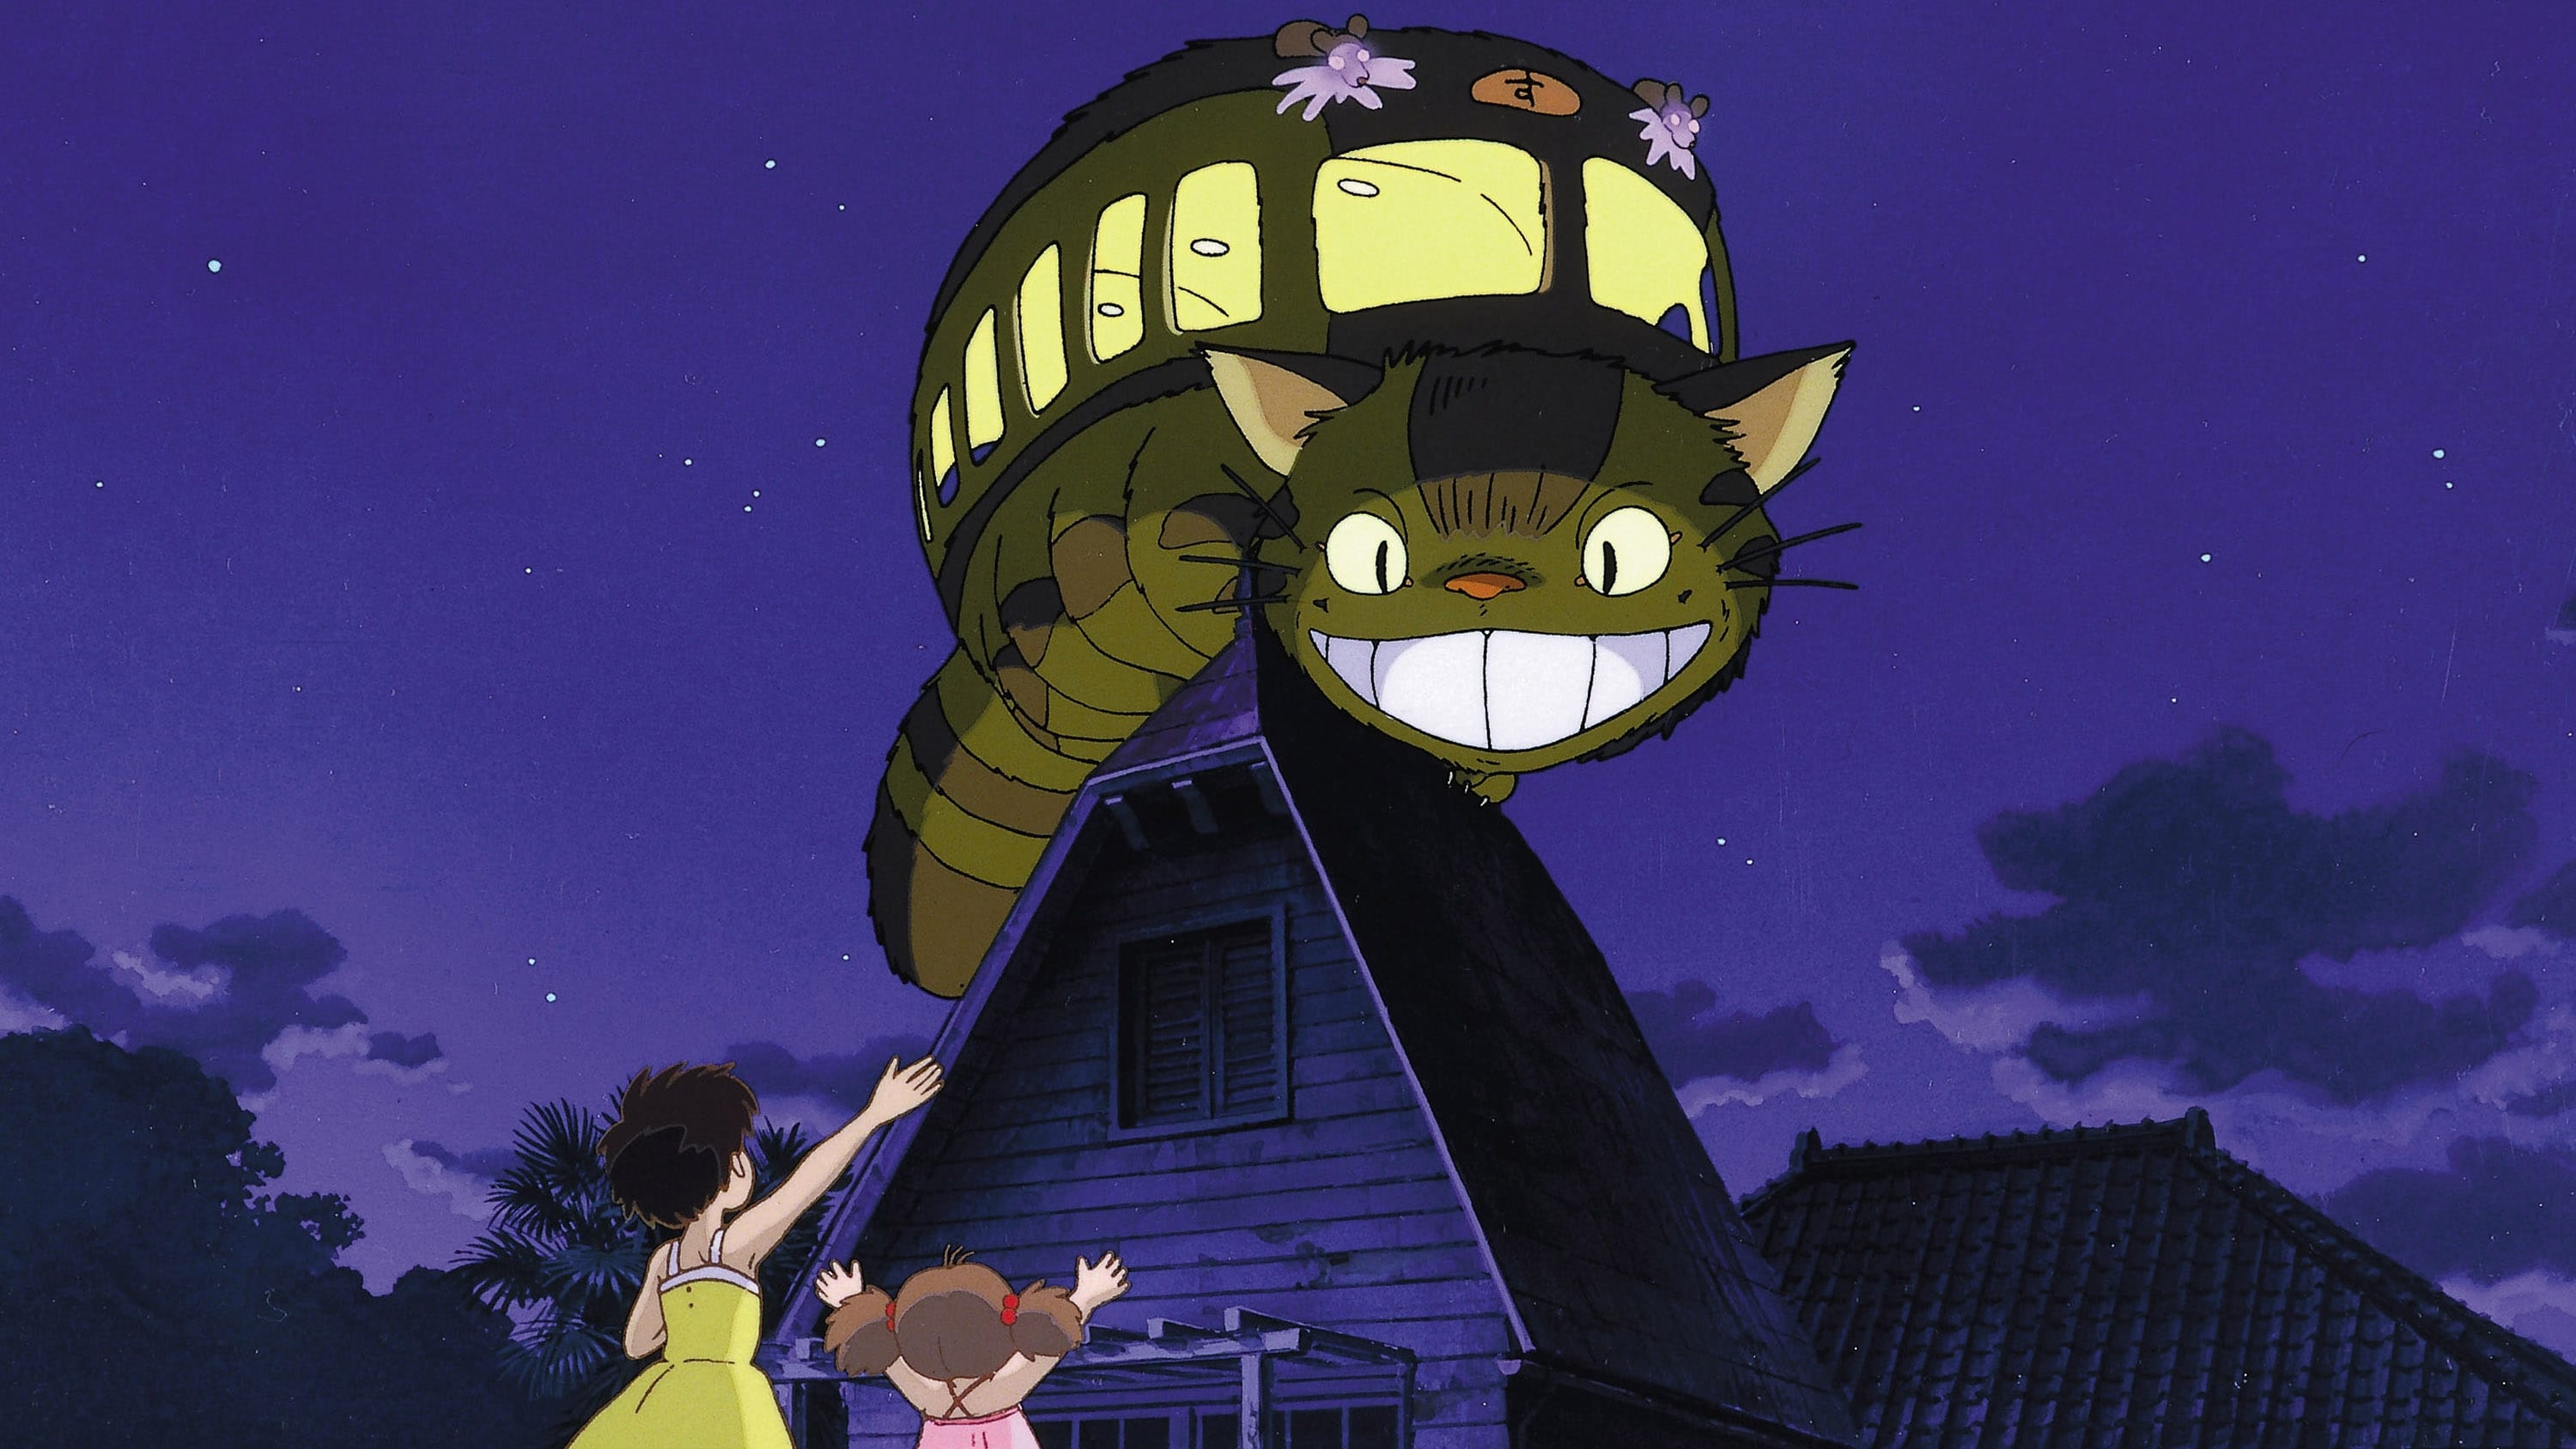 Min granne Totoro (1988)